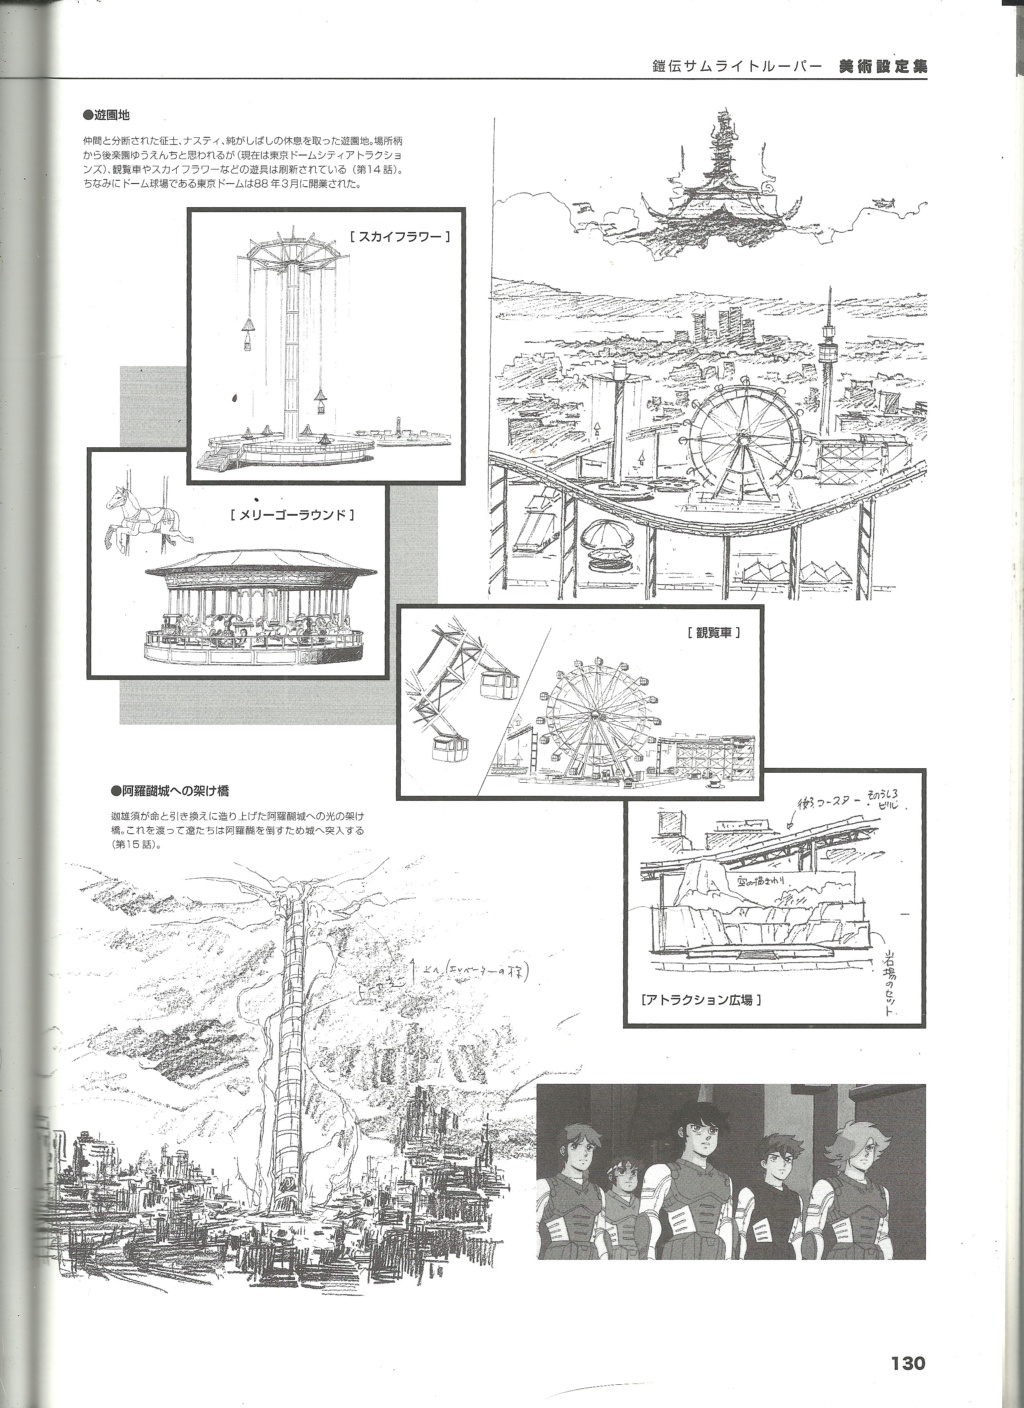 ENG FR - 30th anniversary book / livre du 30e anniversaire - Page 6 128jp10